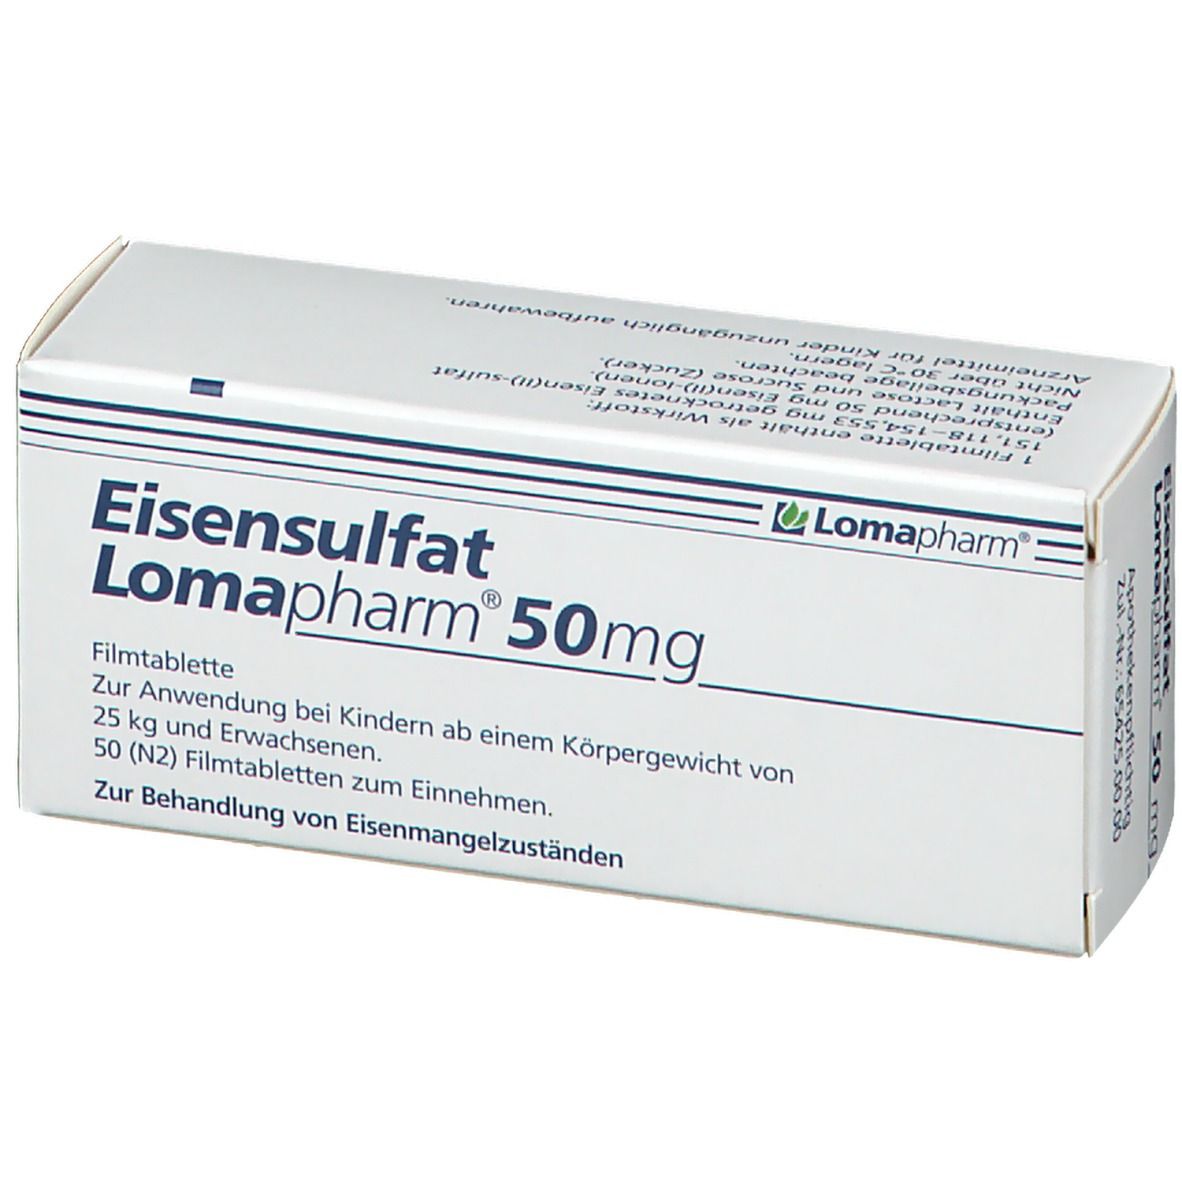 Eisensulfat Lomapharm 50 mg Filmtabletten